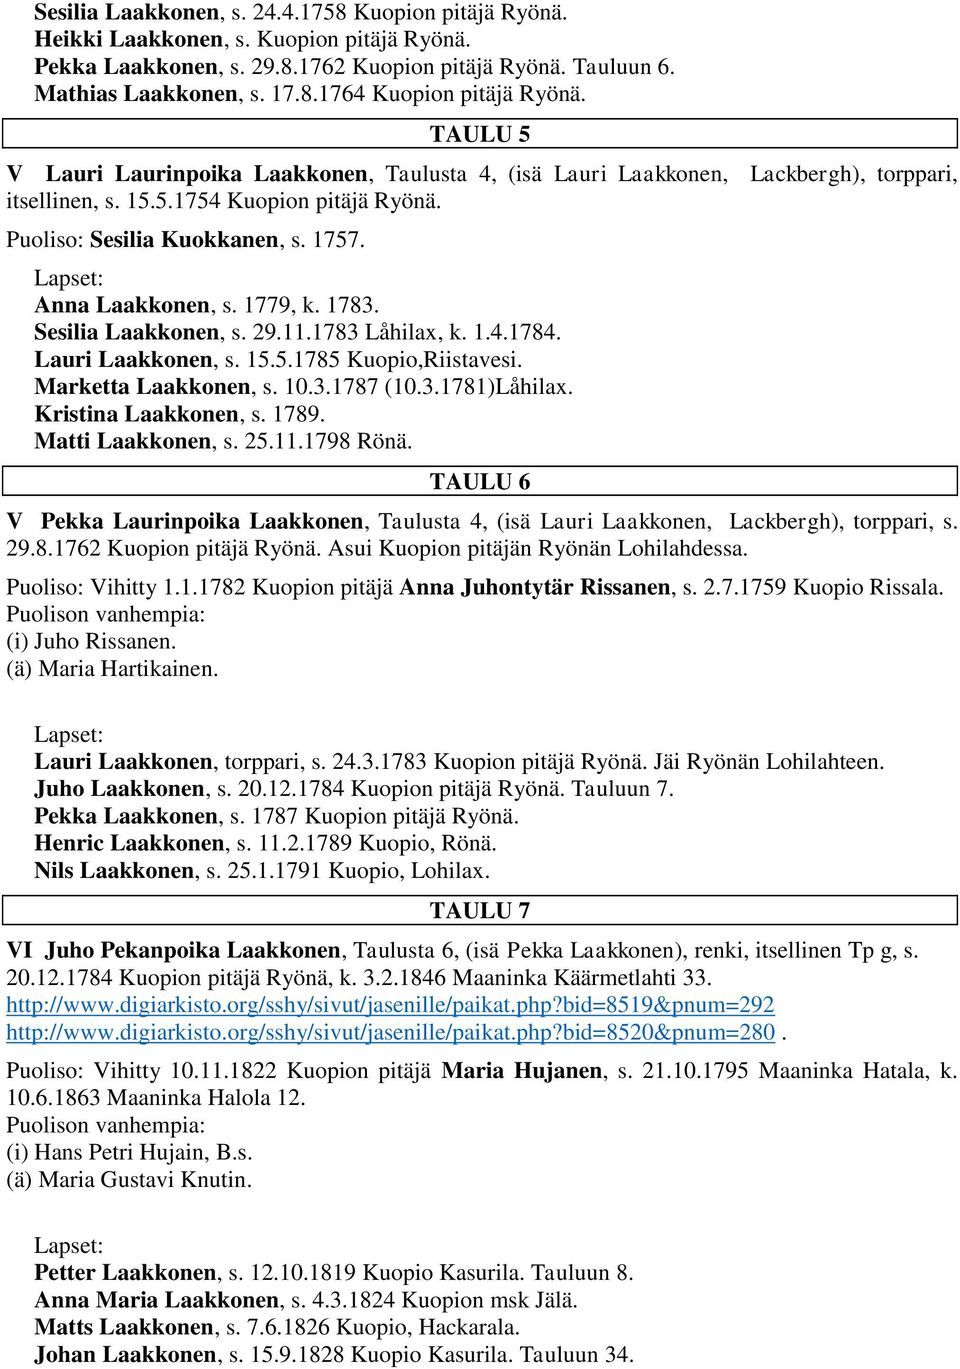 1779, k. 1783. Sesilia Laakkonen, s. 29.11.1783 Låhilax, k. 1.4.1784. Lauri Laakkonen, s. 15.5.1785 Kuopio,Riistavesi. Marketta Laakkonen, s. 10.3.1787 (10.3.1781)Låhilax. Kristina Laakkonen, s. 1789.